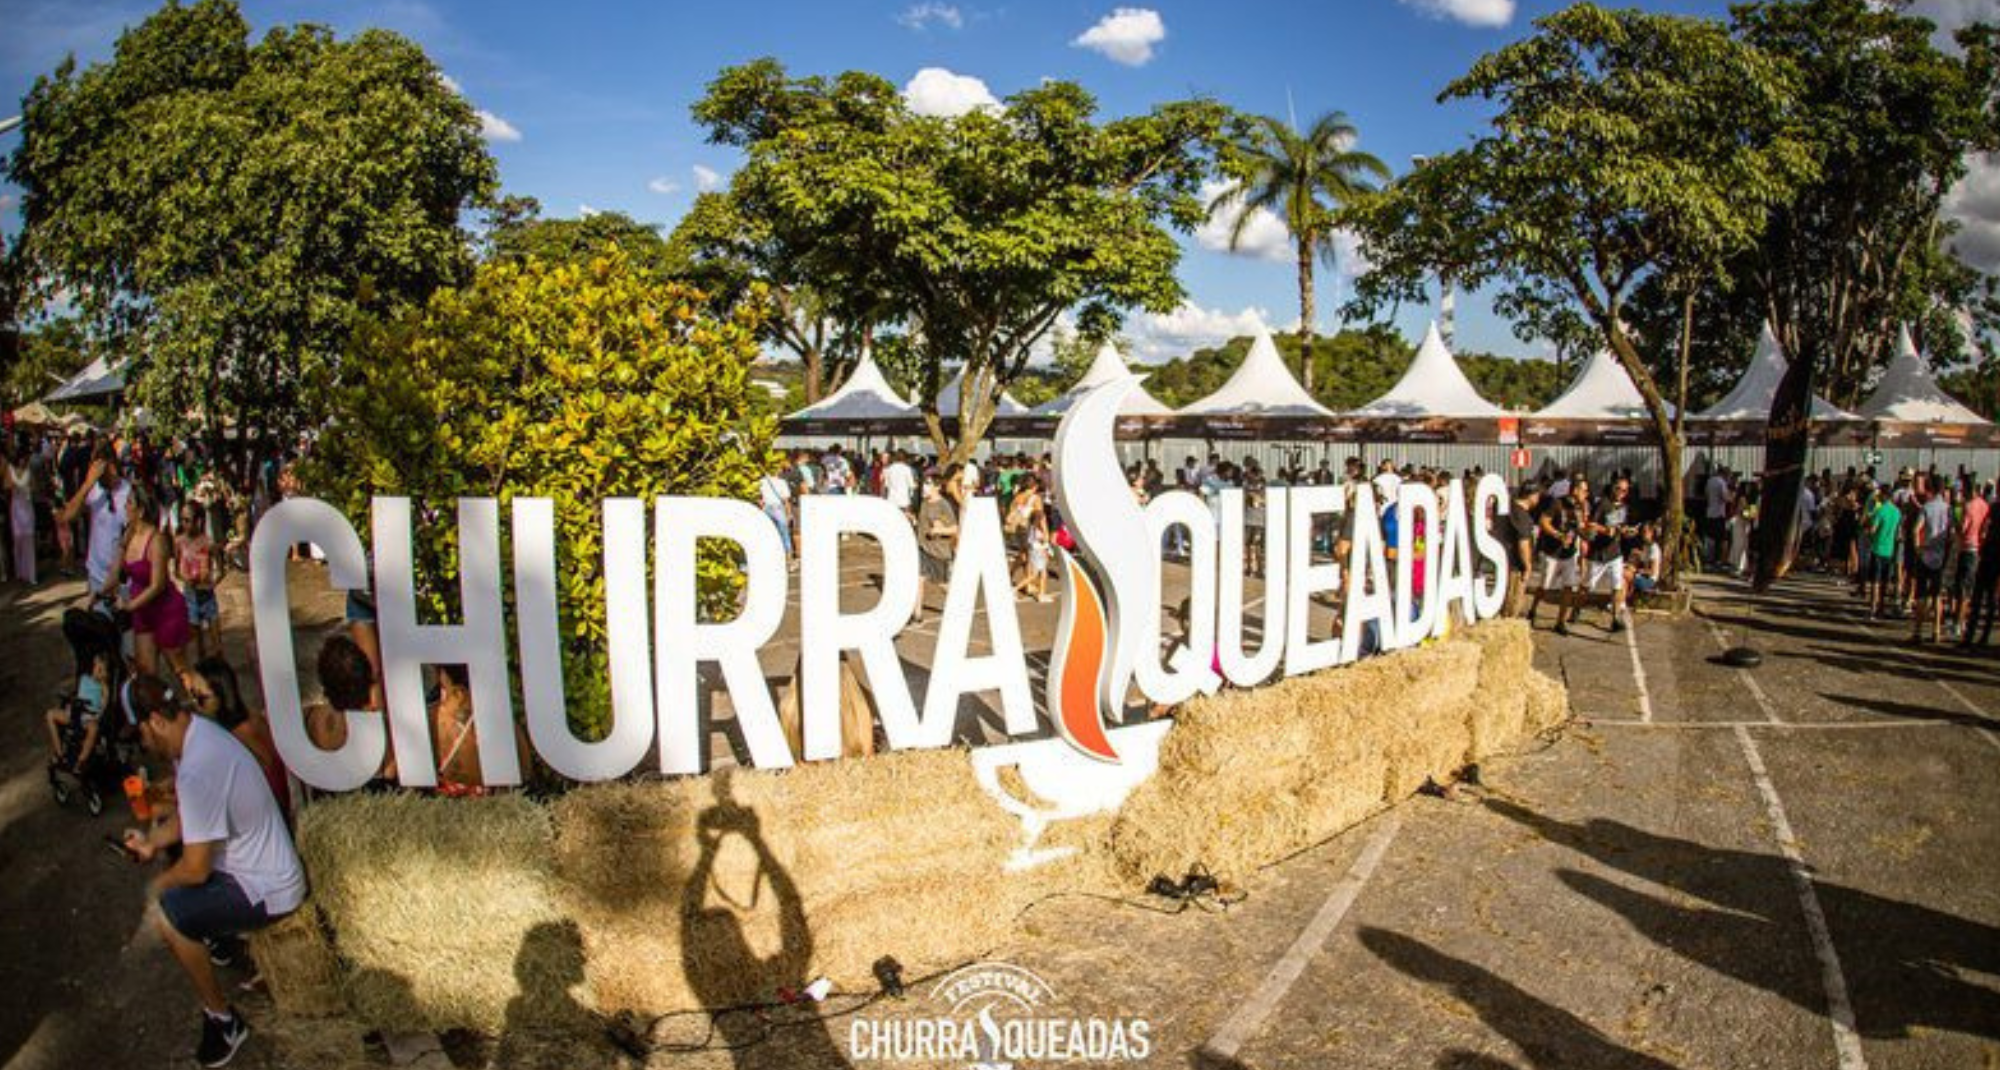 Pirarucu, jacaré e muito mais: Praça de carnes exóticas é curiosidade em festival de churrasco em Ribeirão Preto